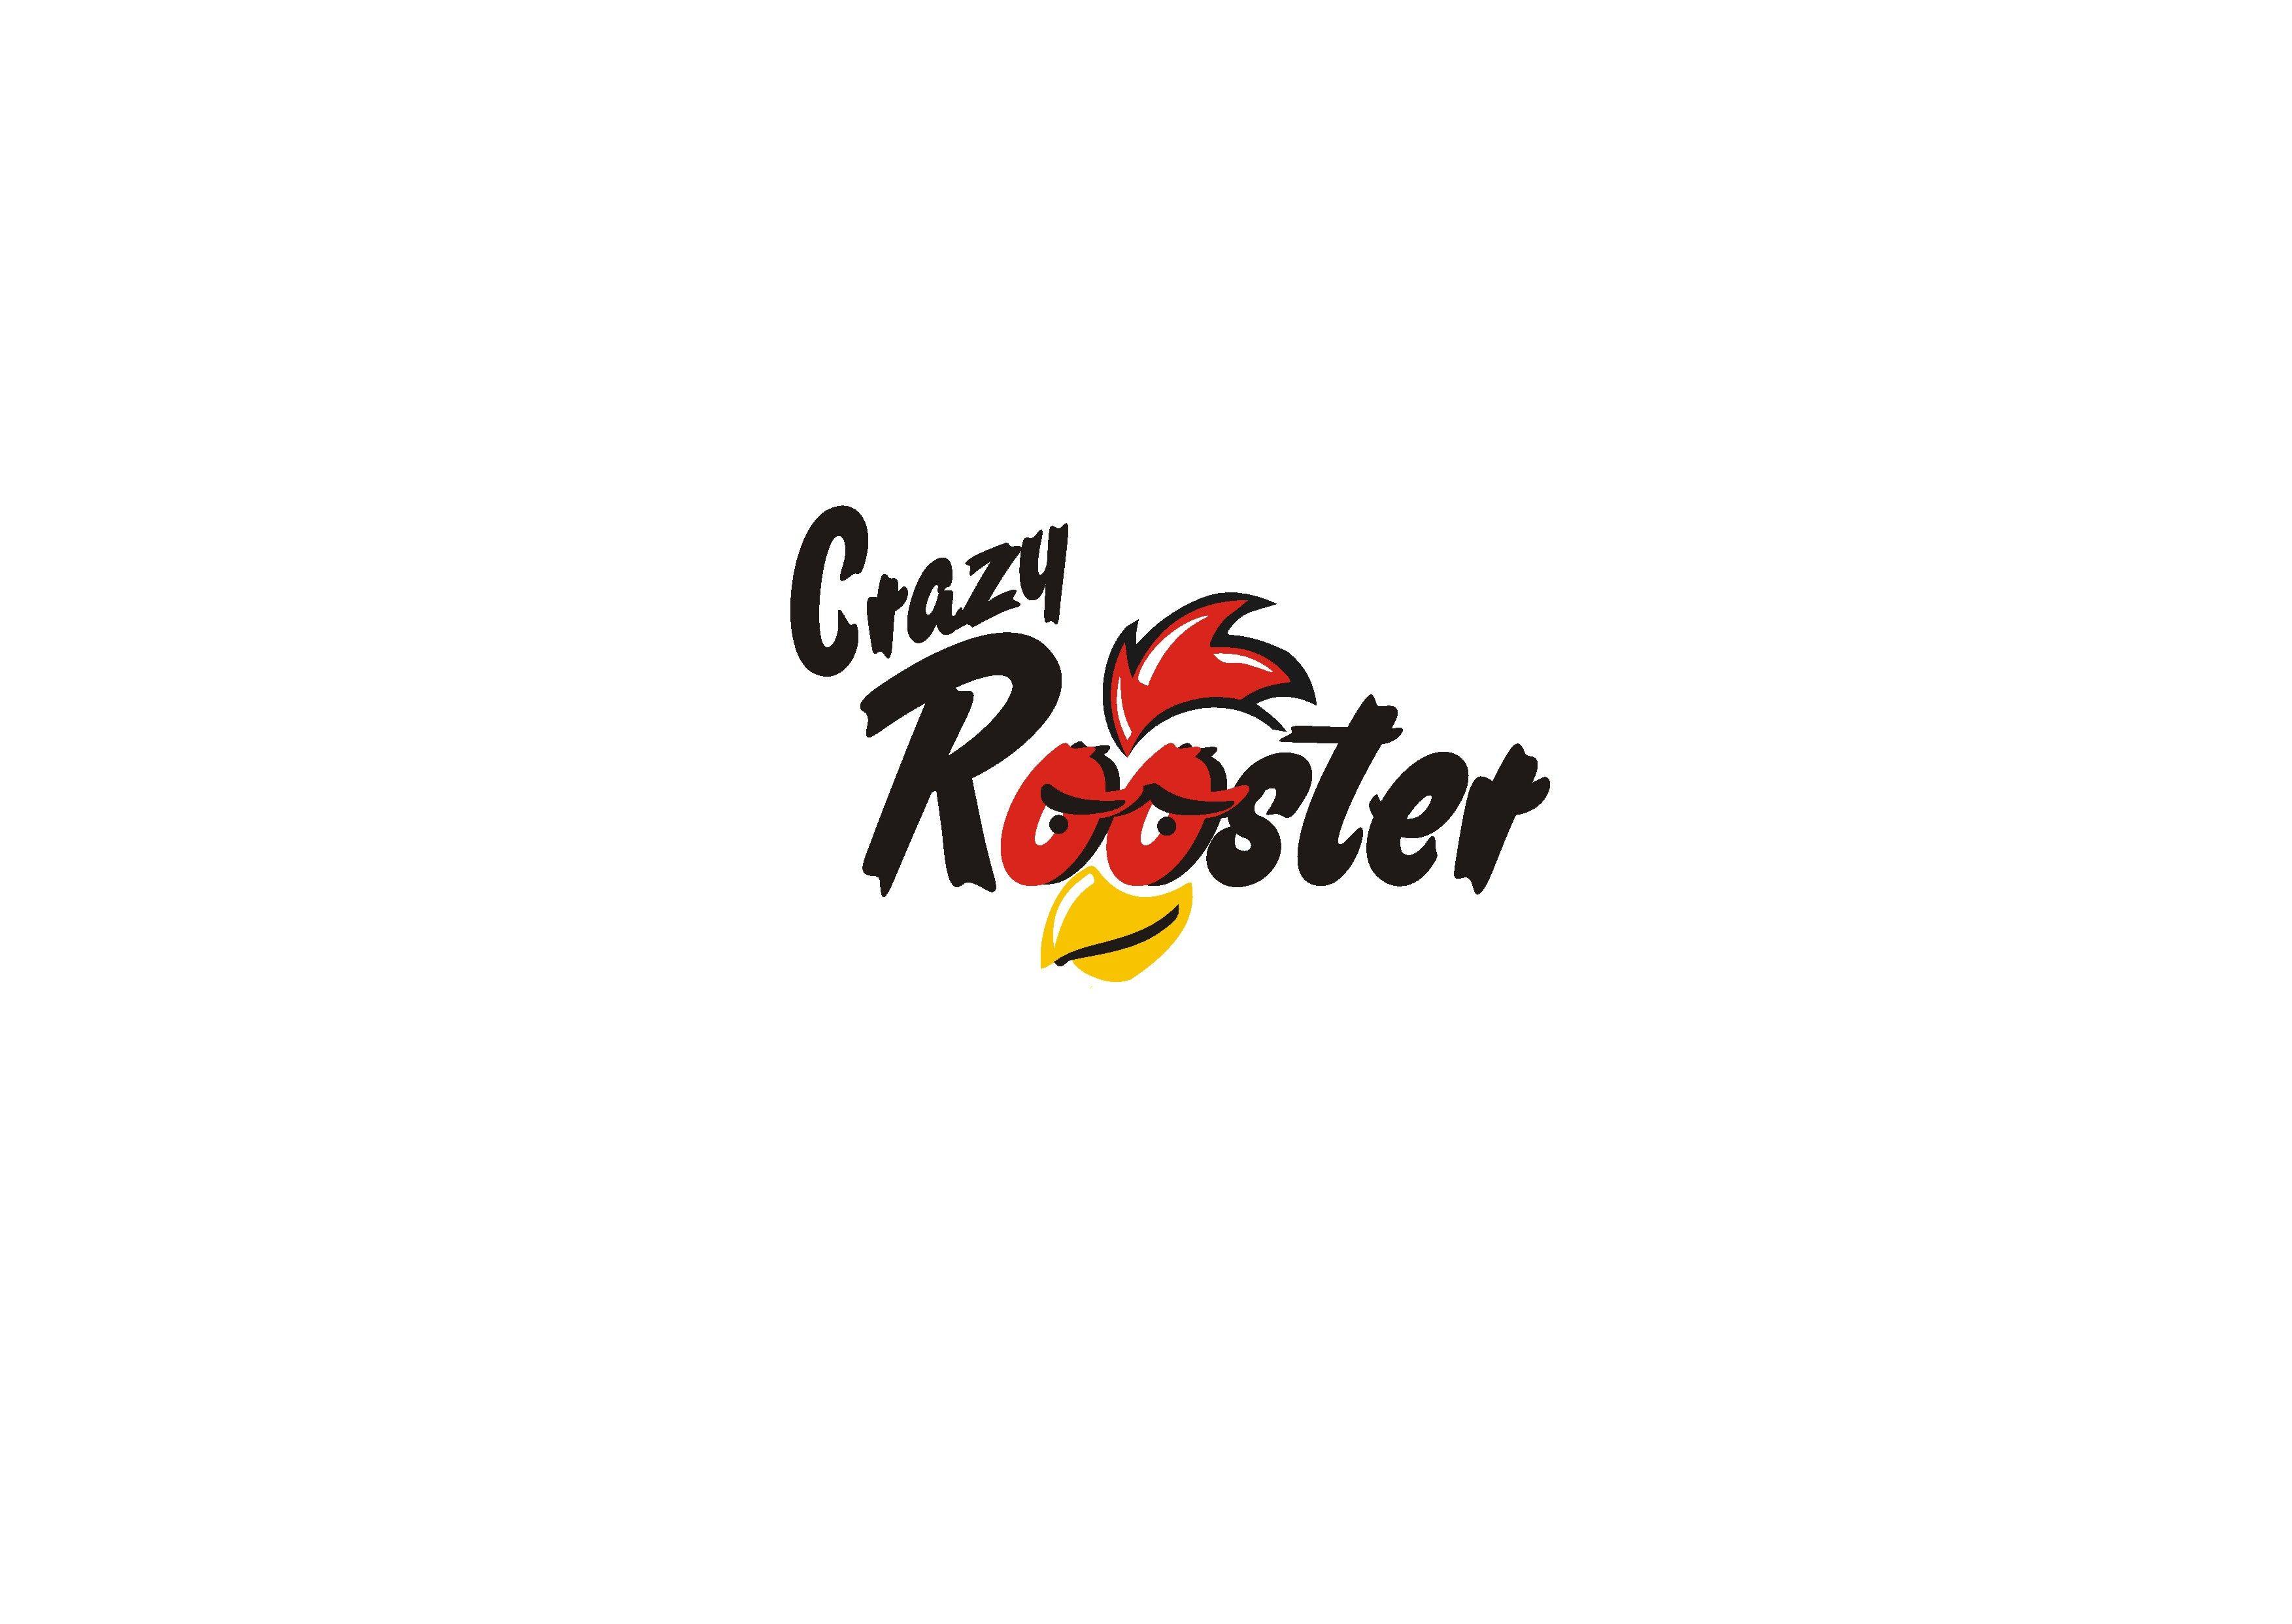 Roster Logo - Crazy roster